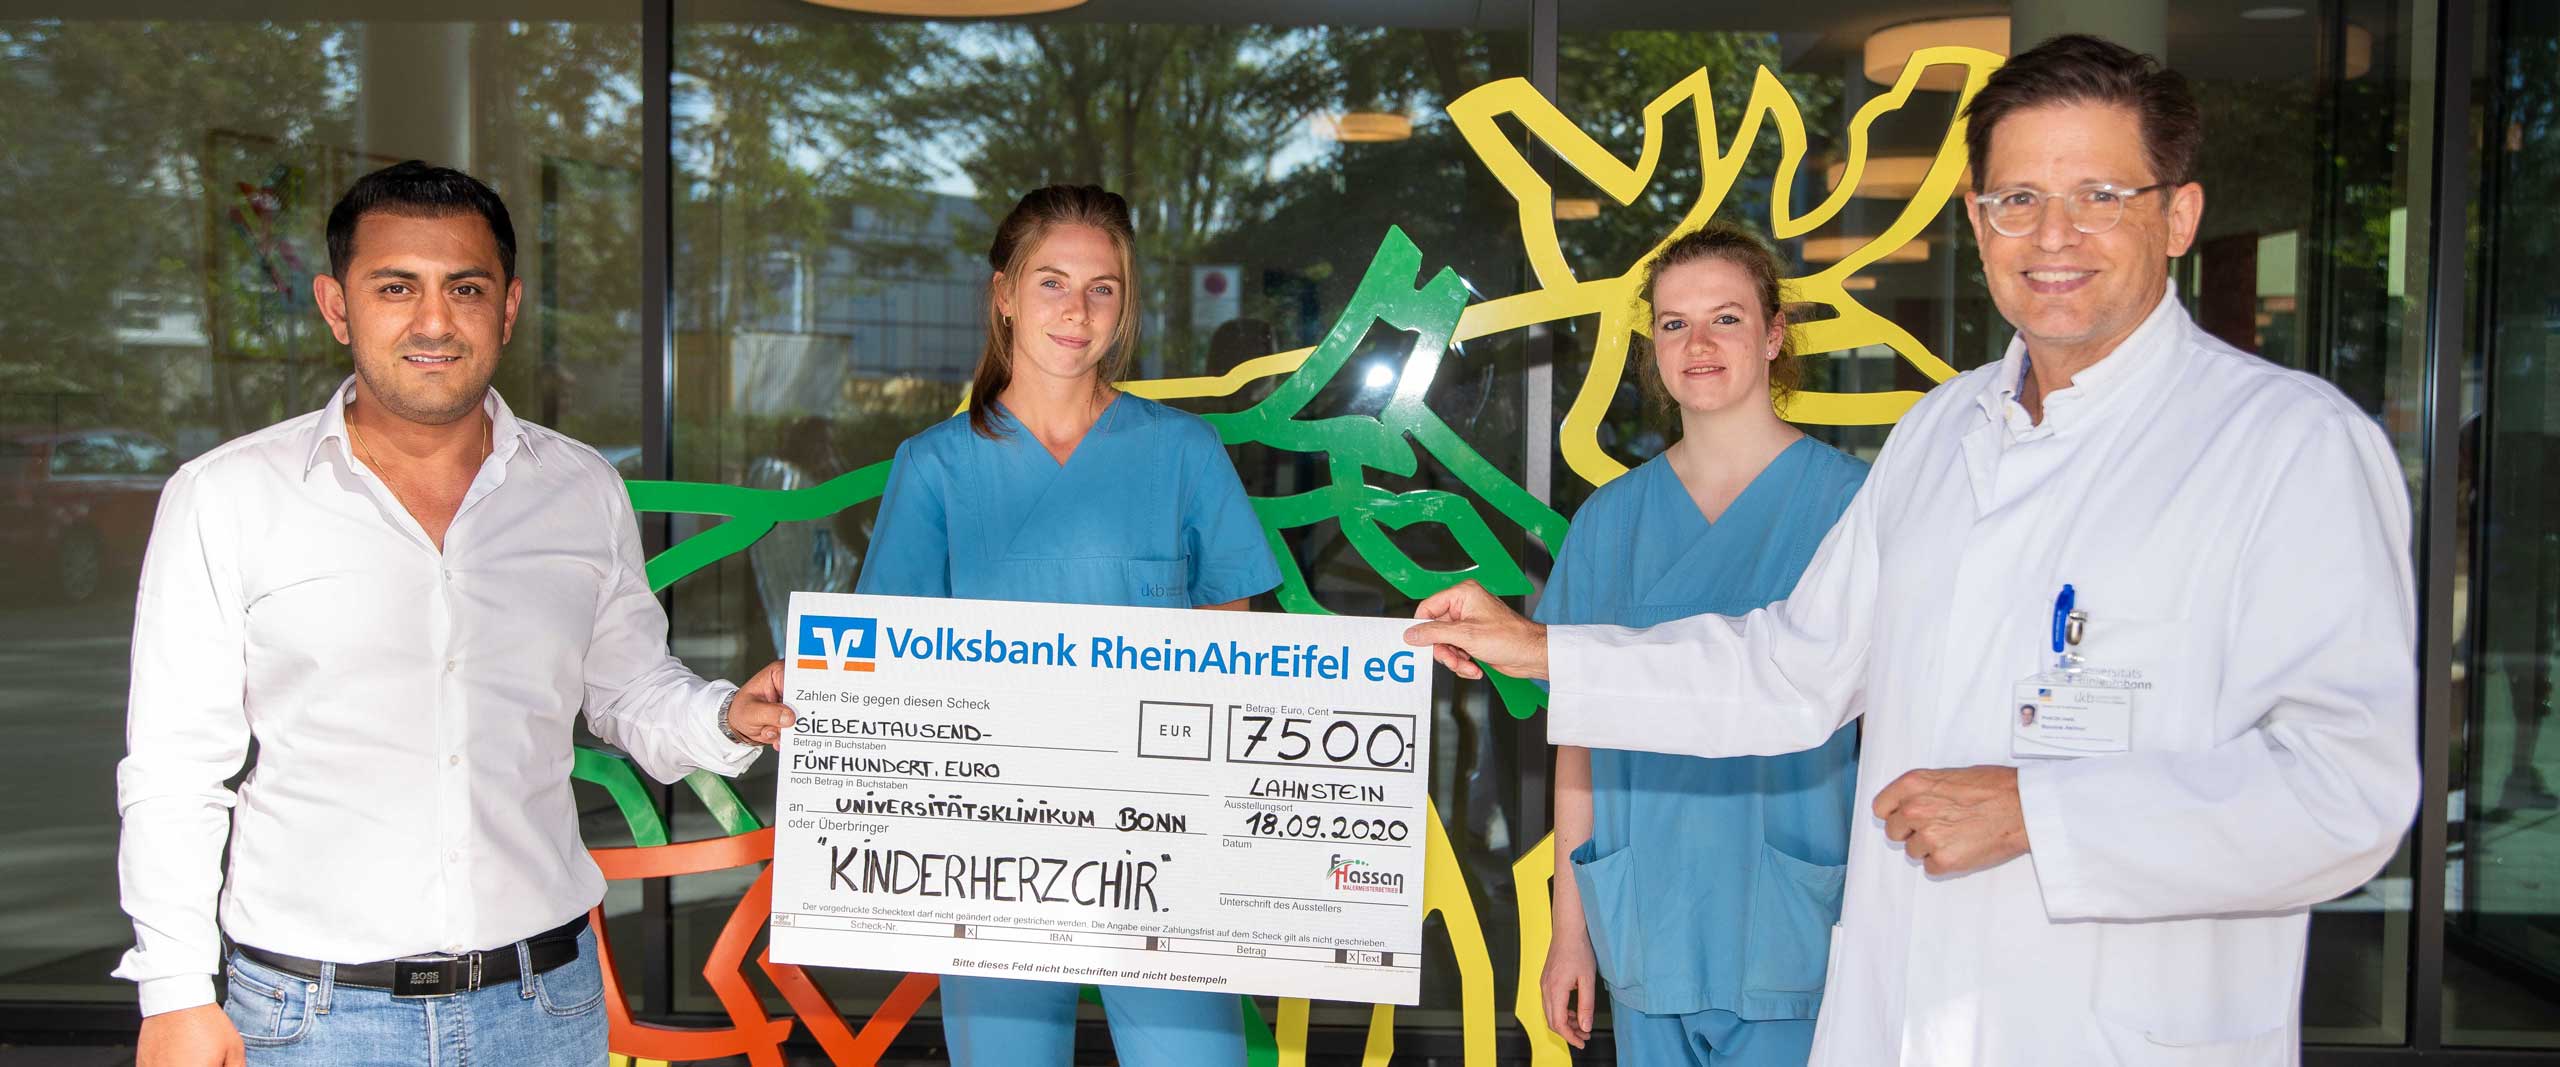 Spende für Kinderherzchirurgie am Eltern-Kind-Zentrum des Universitätsklinikums Bonn